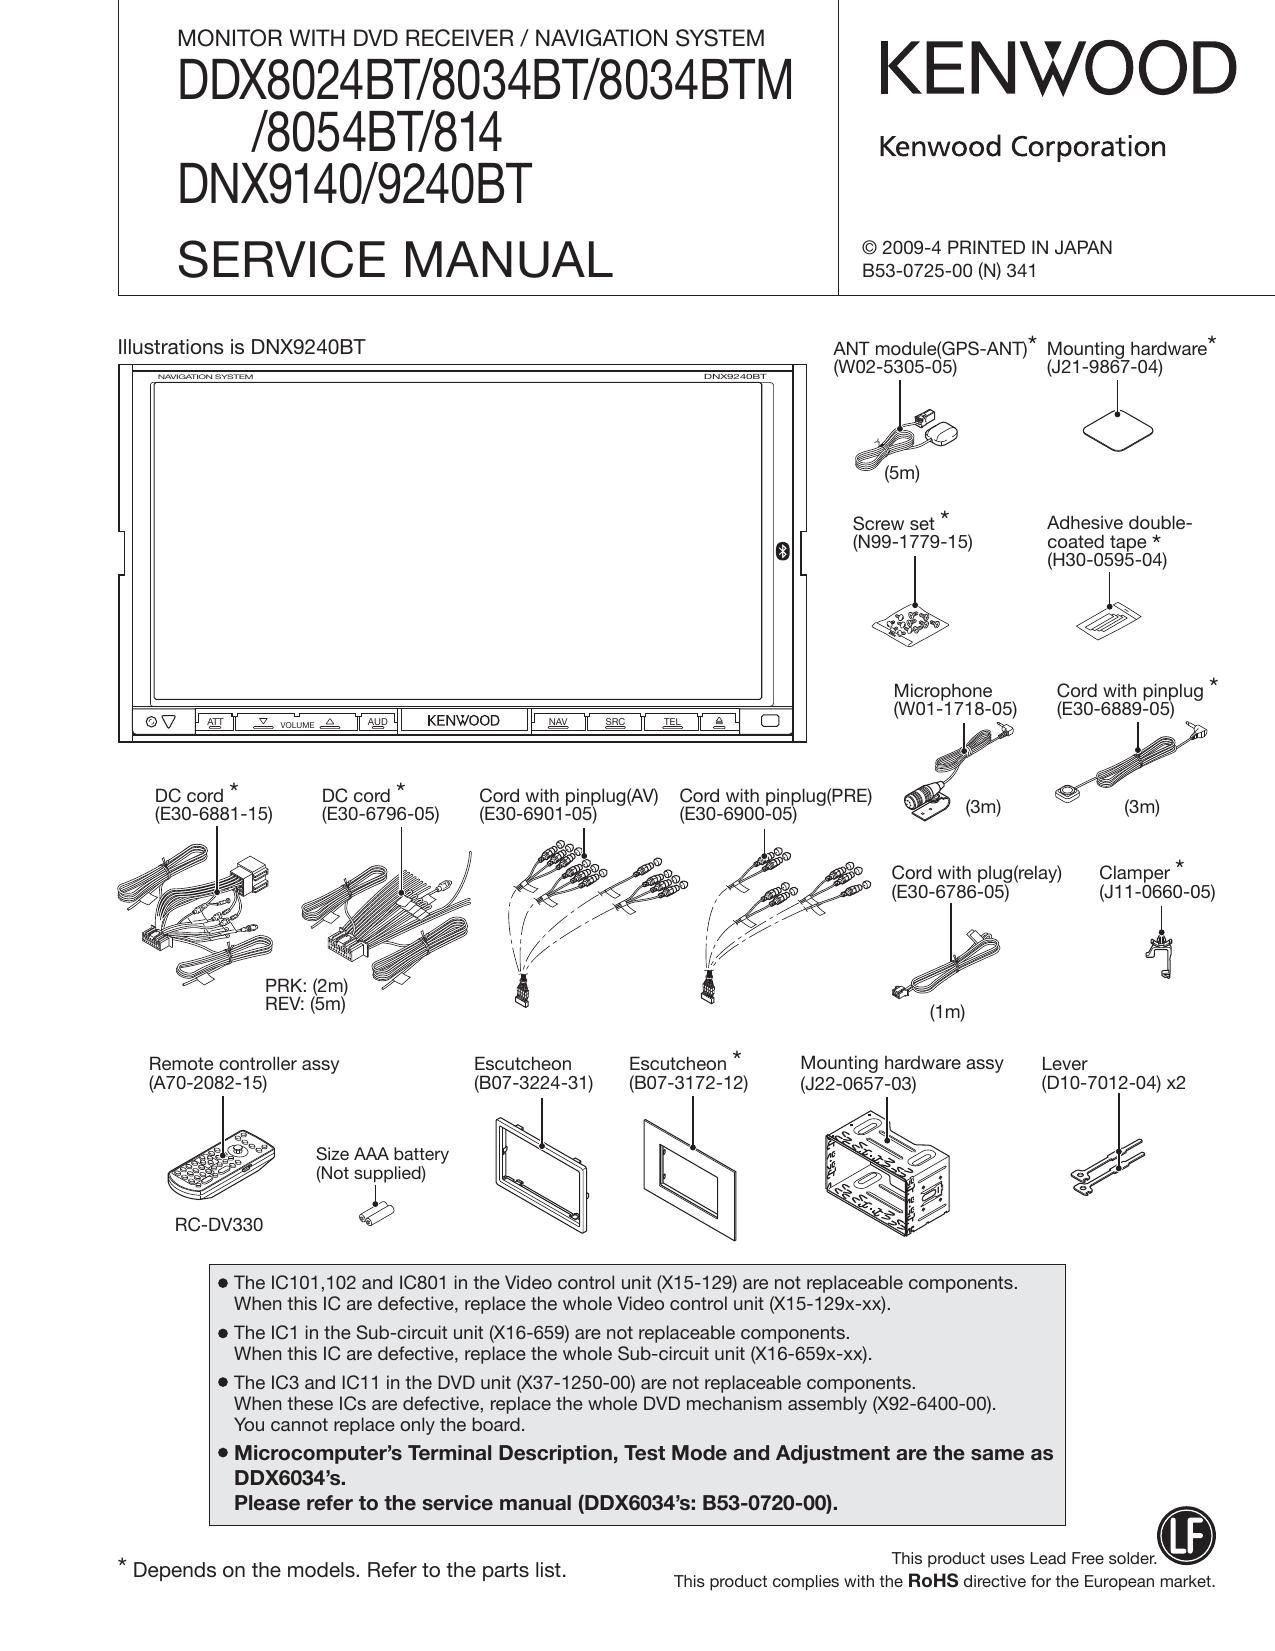 Kenwood DDX 8024 BT Service Manual